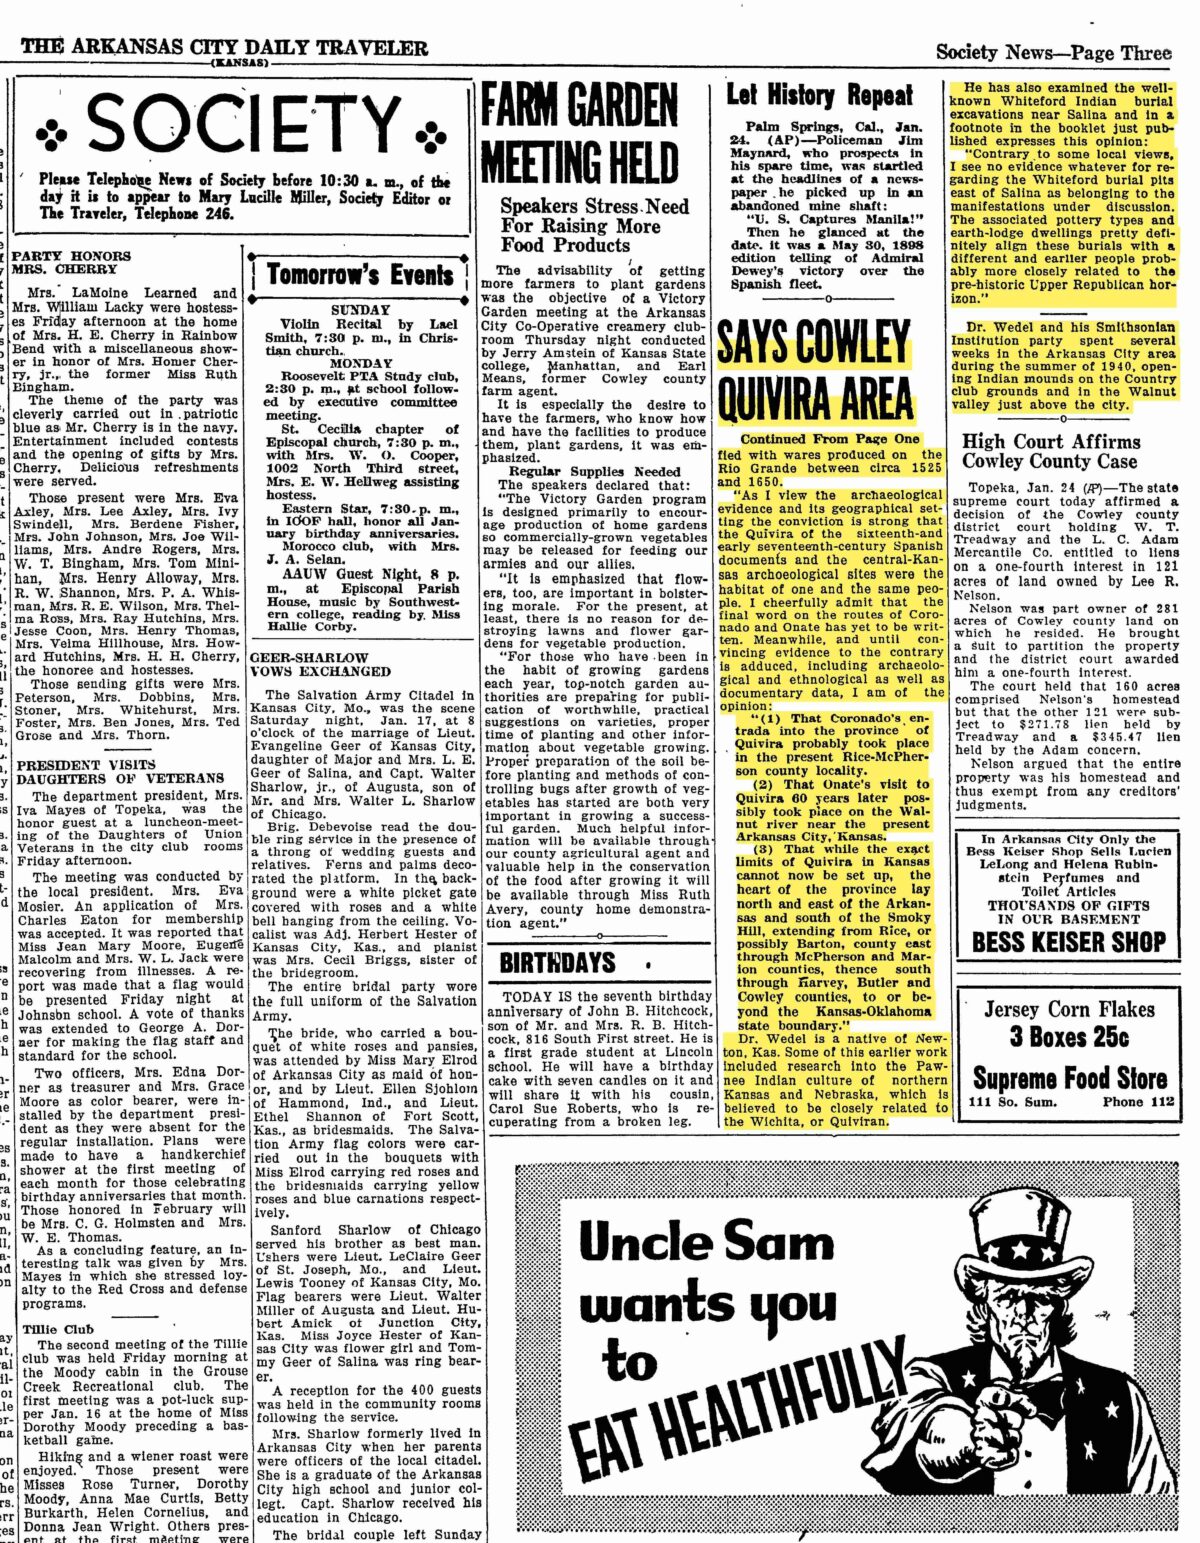 The Arkansas City Daily Traveler 1/24/1942 pg. 3